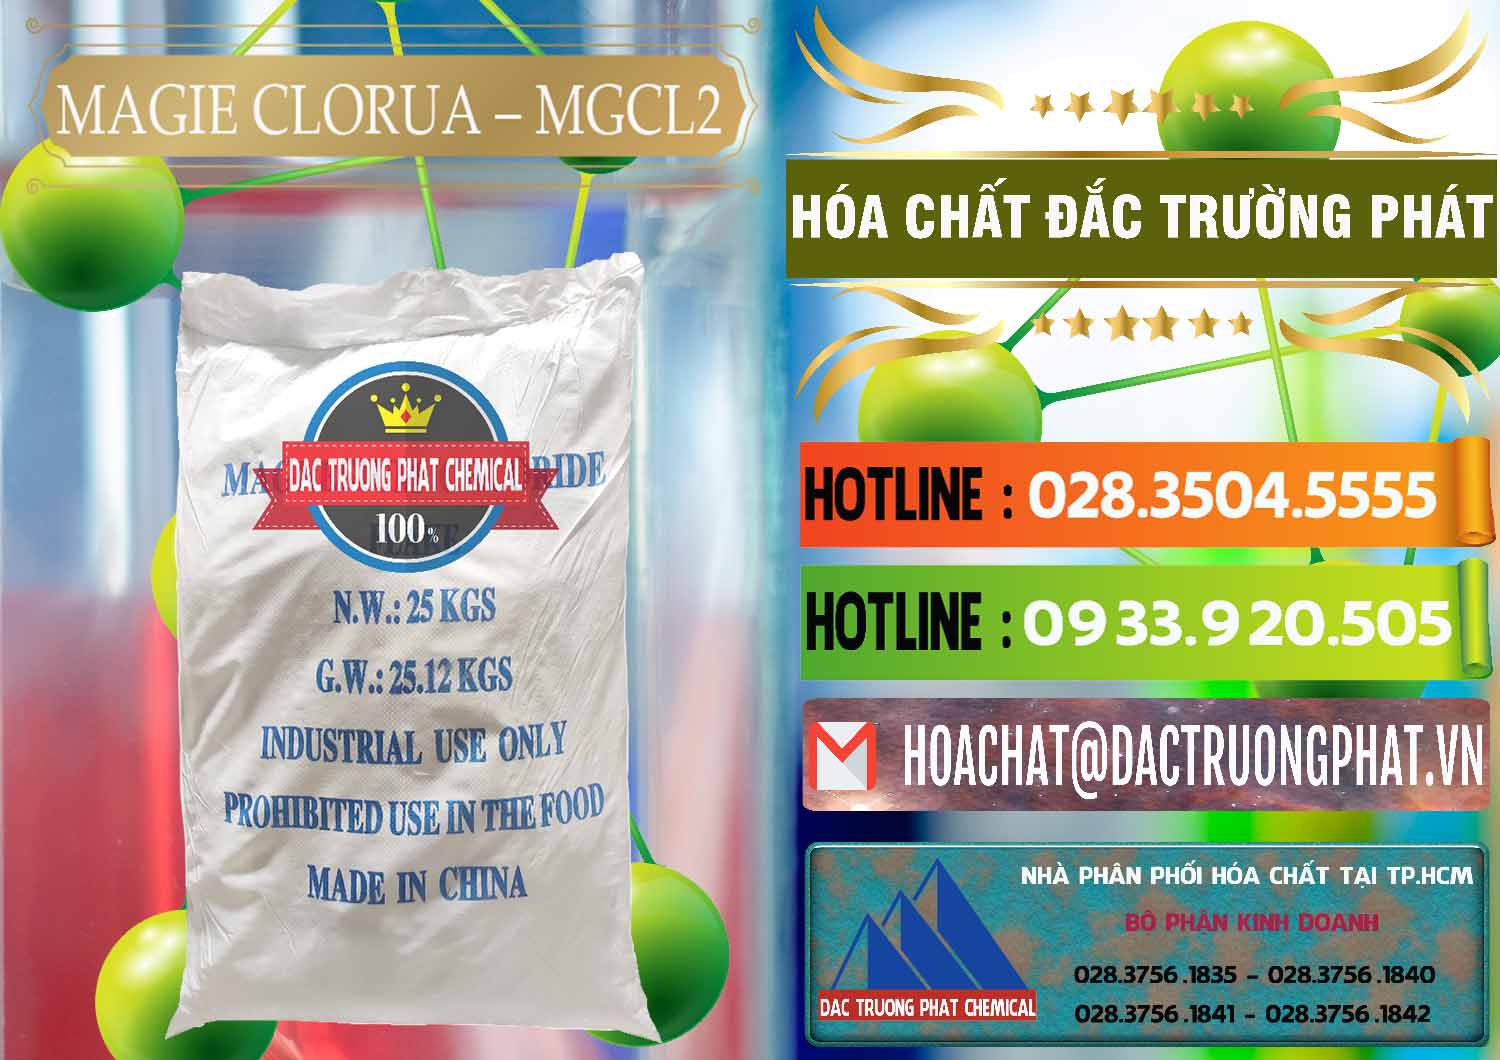 Bán & cung cấp Magie Clorua – MGCL2 96% Dạng Vảy Trung Quốc China - 0091 - Chuyên phân phối ( kinh doanh ) hóa chất tại TP.HCM - cungcaphoachat.com.vn